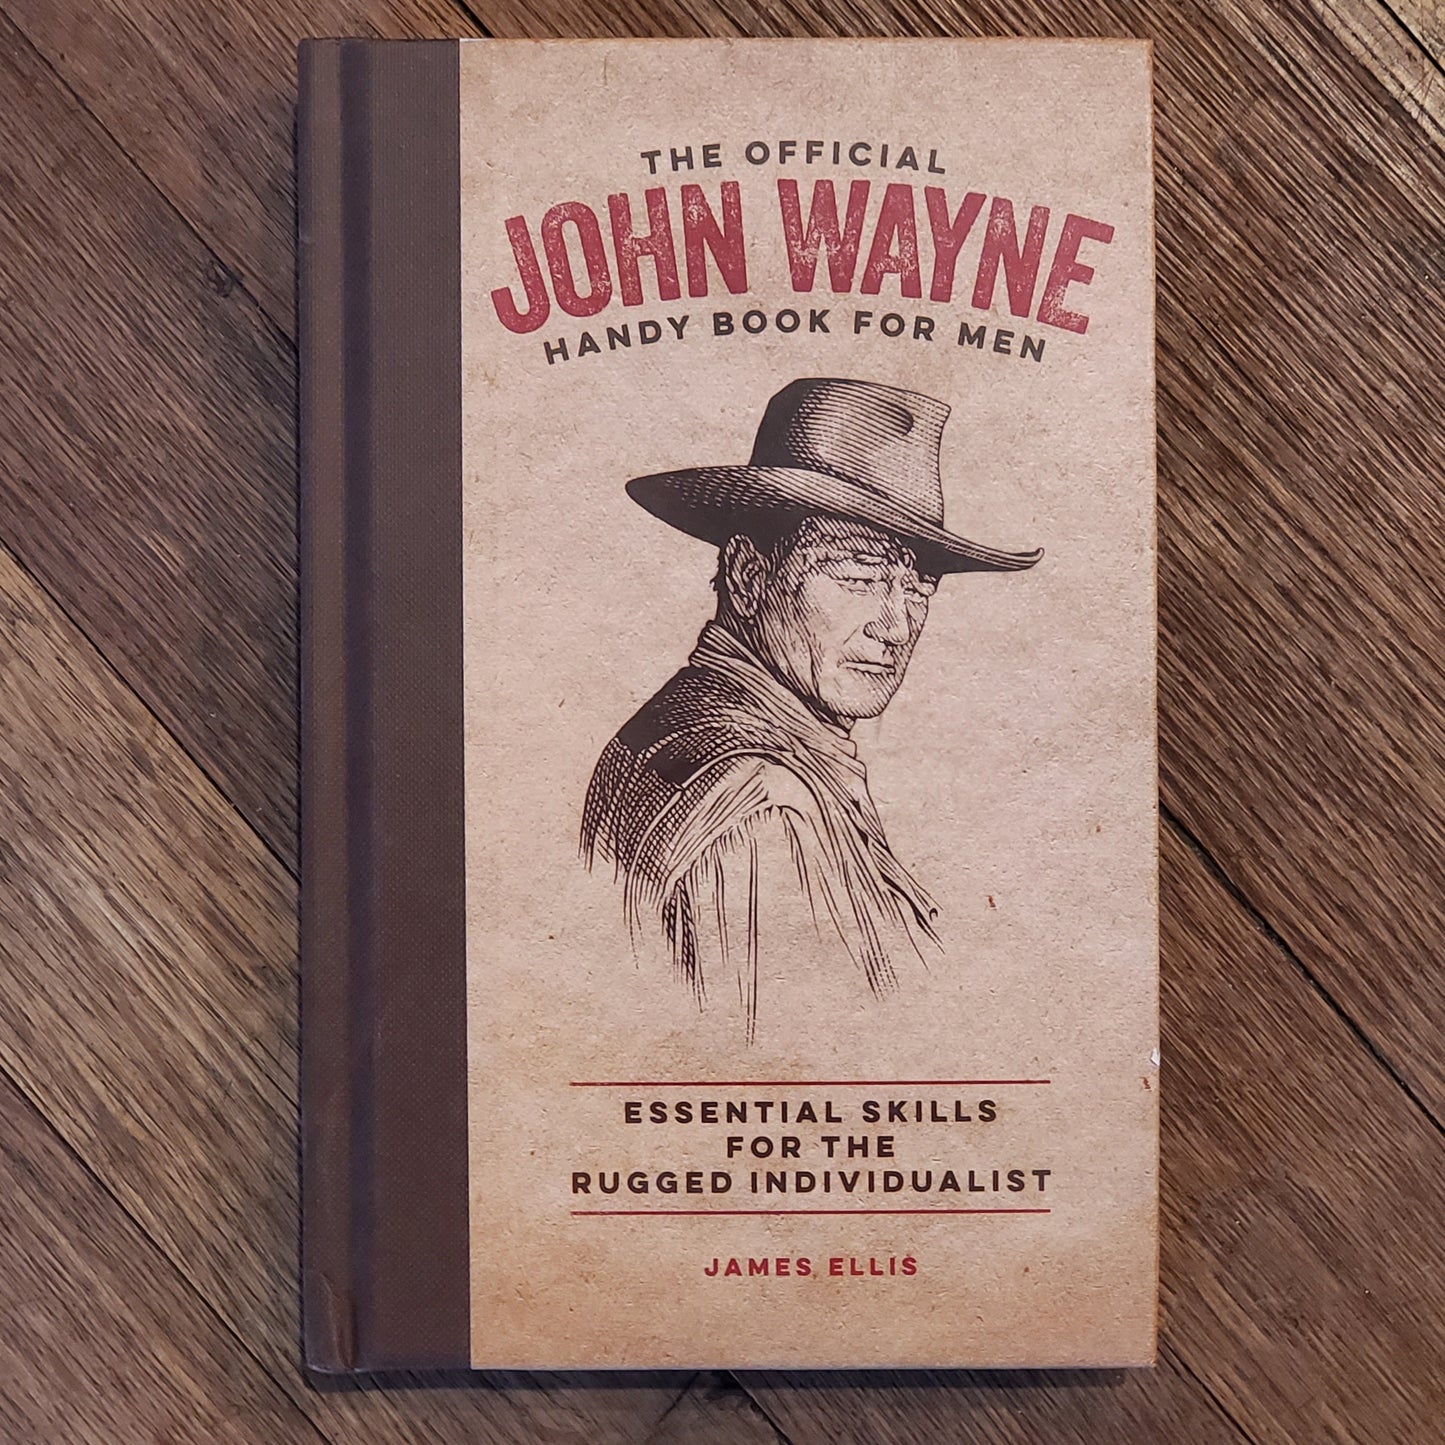 GB John Wayne Handy Book for Men